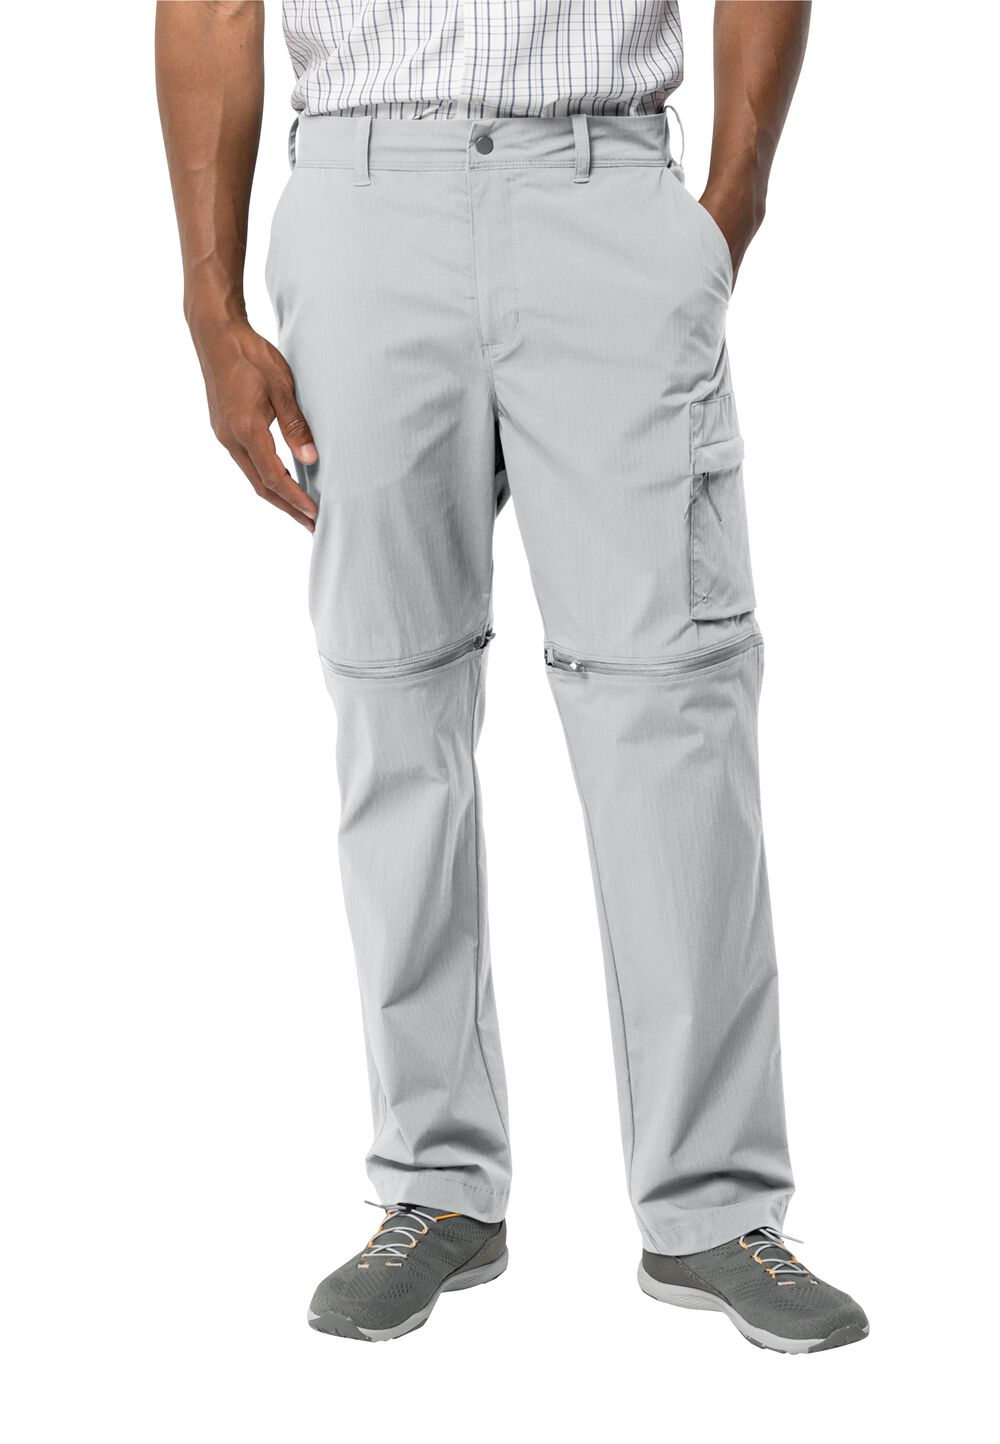 Jack Wolfskin Wanderthirst Zip Pants Men Zip-Off-broek Heren 56 grijs cool grey